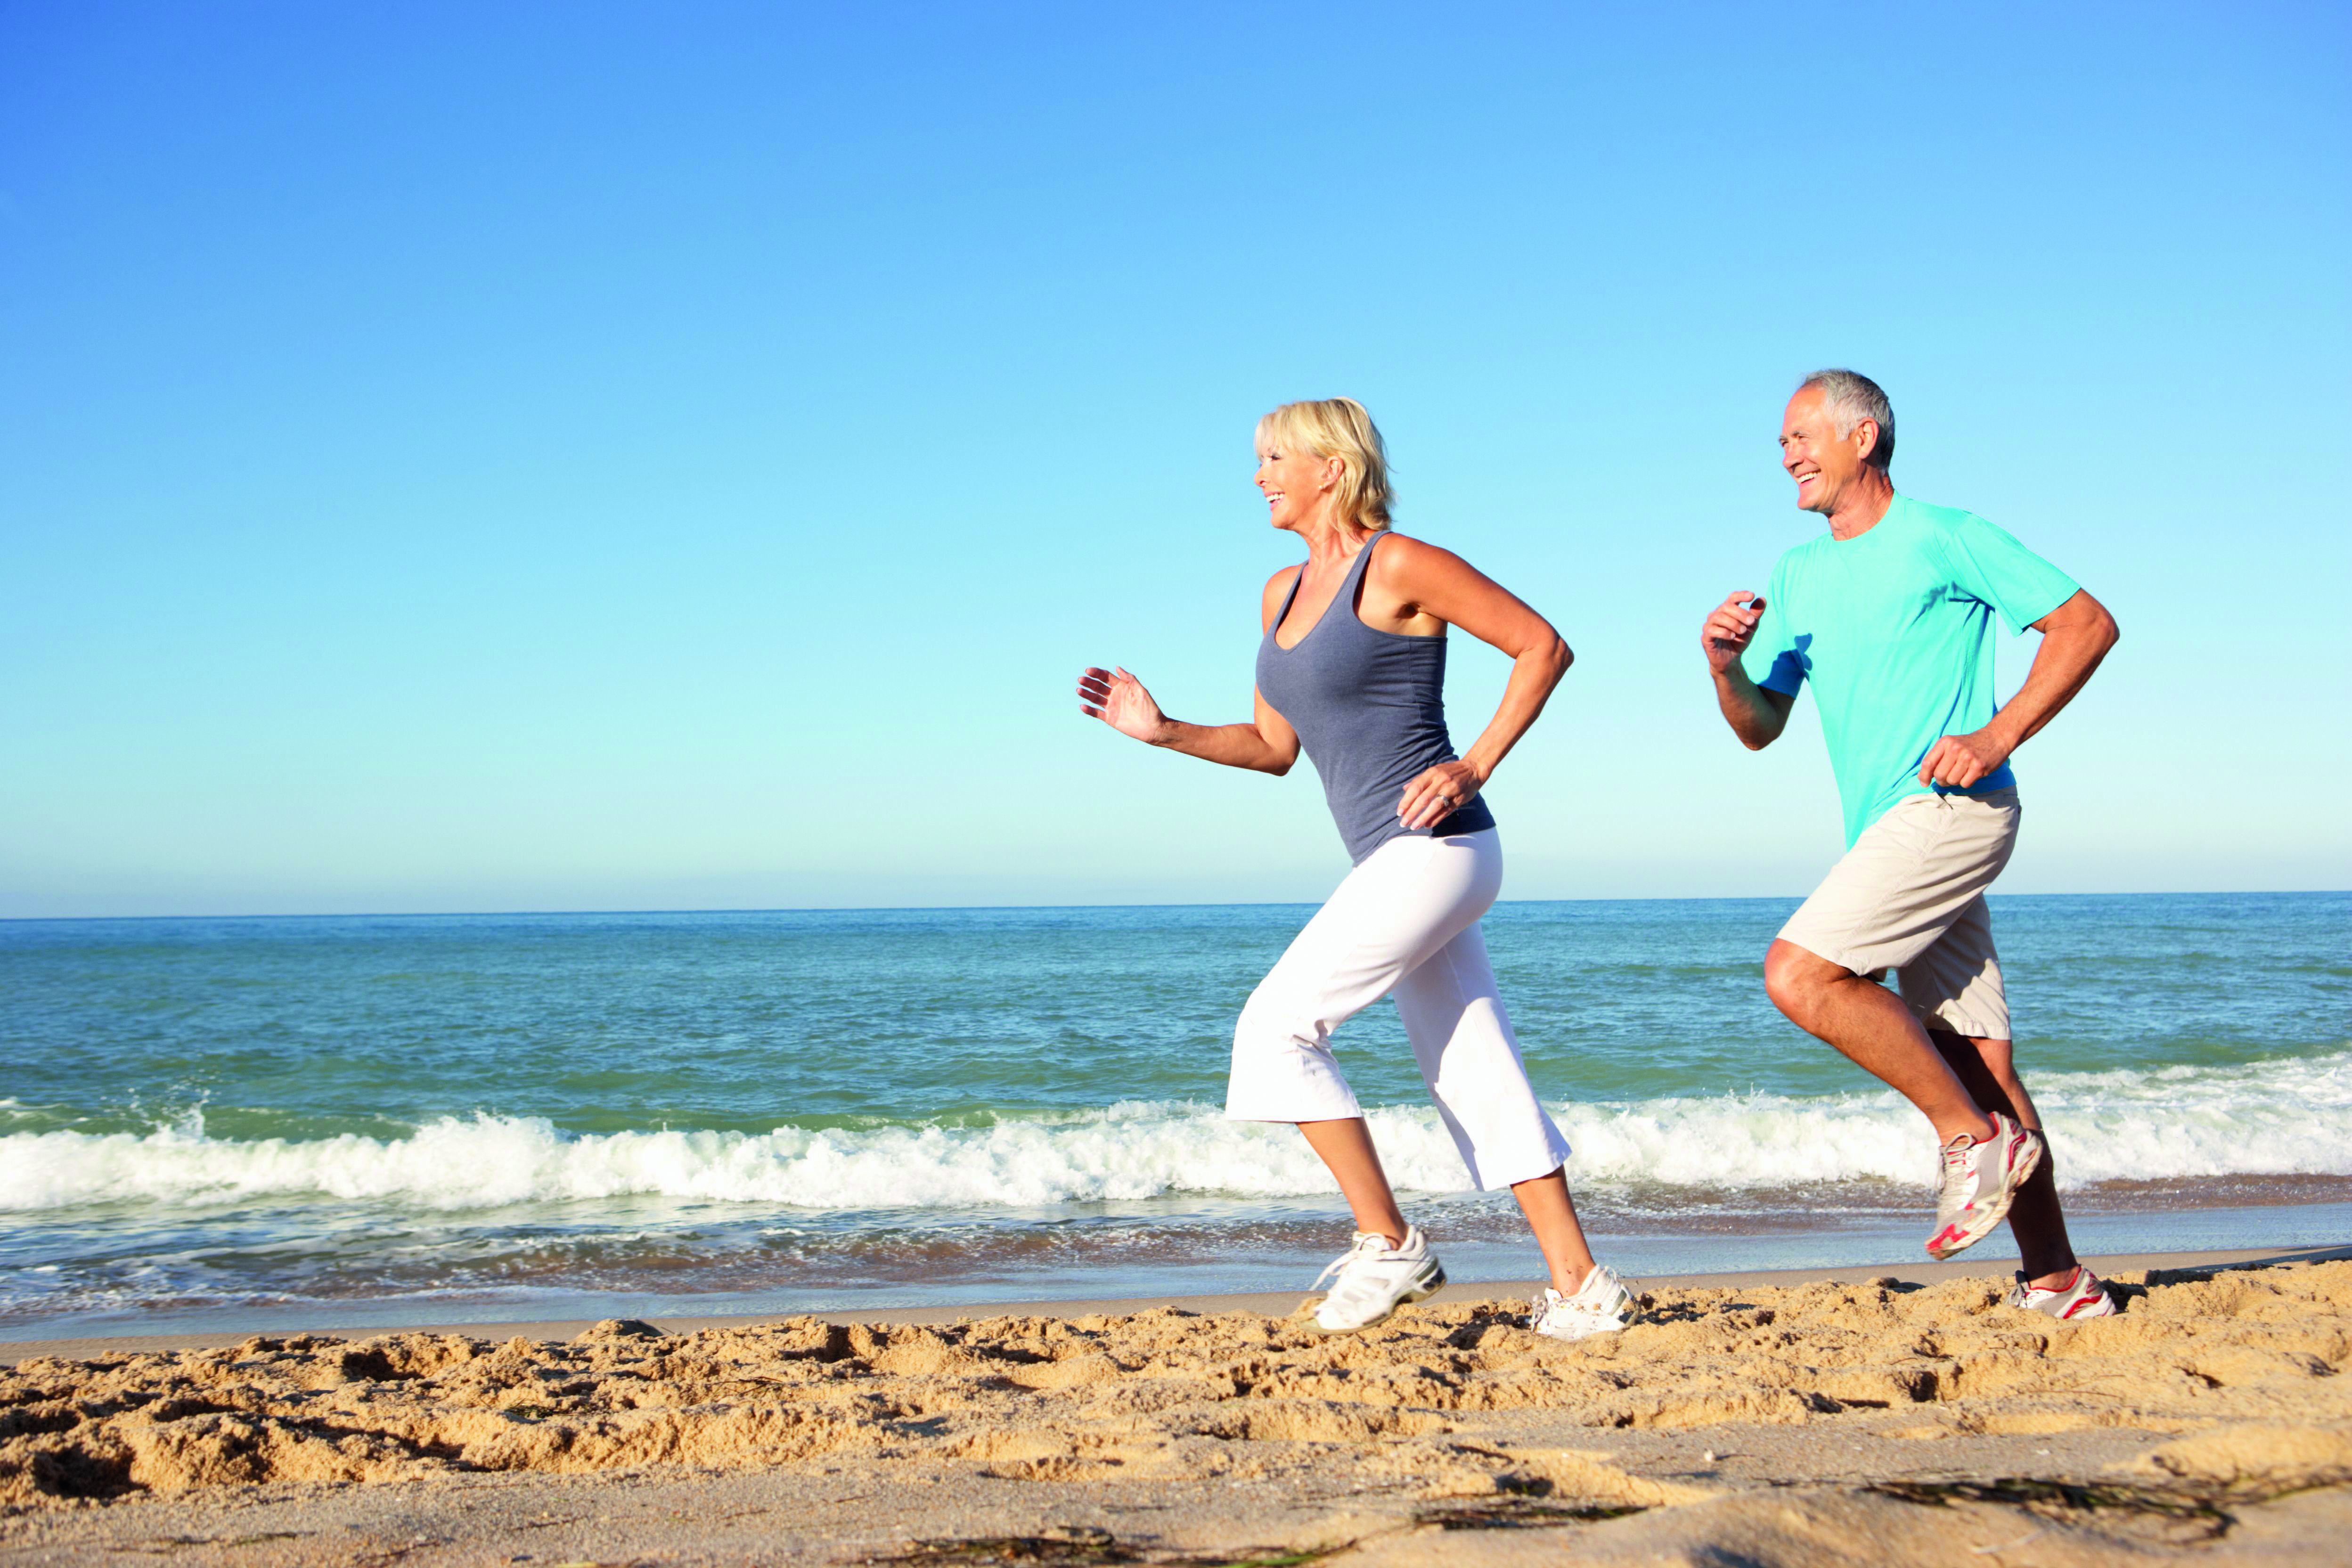 Организма в любом возрасте. Активный образ жизни. Здоровый человек. Физическая активность и здоровье. Здоровье и долголетие человека.